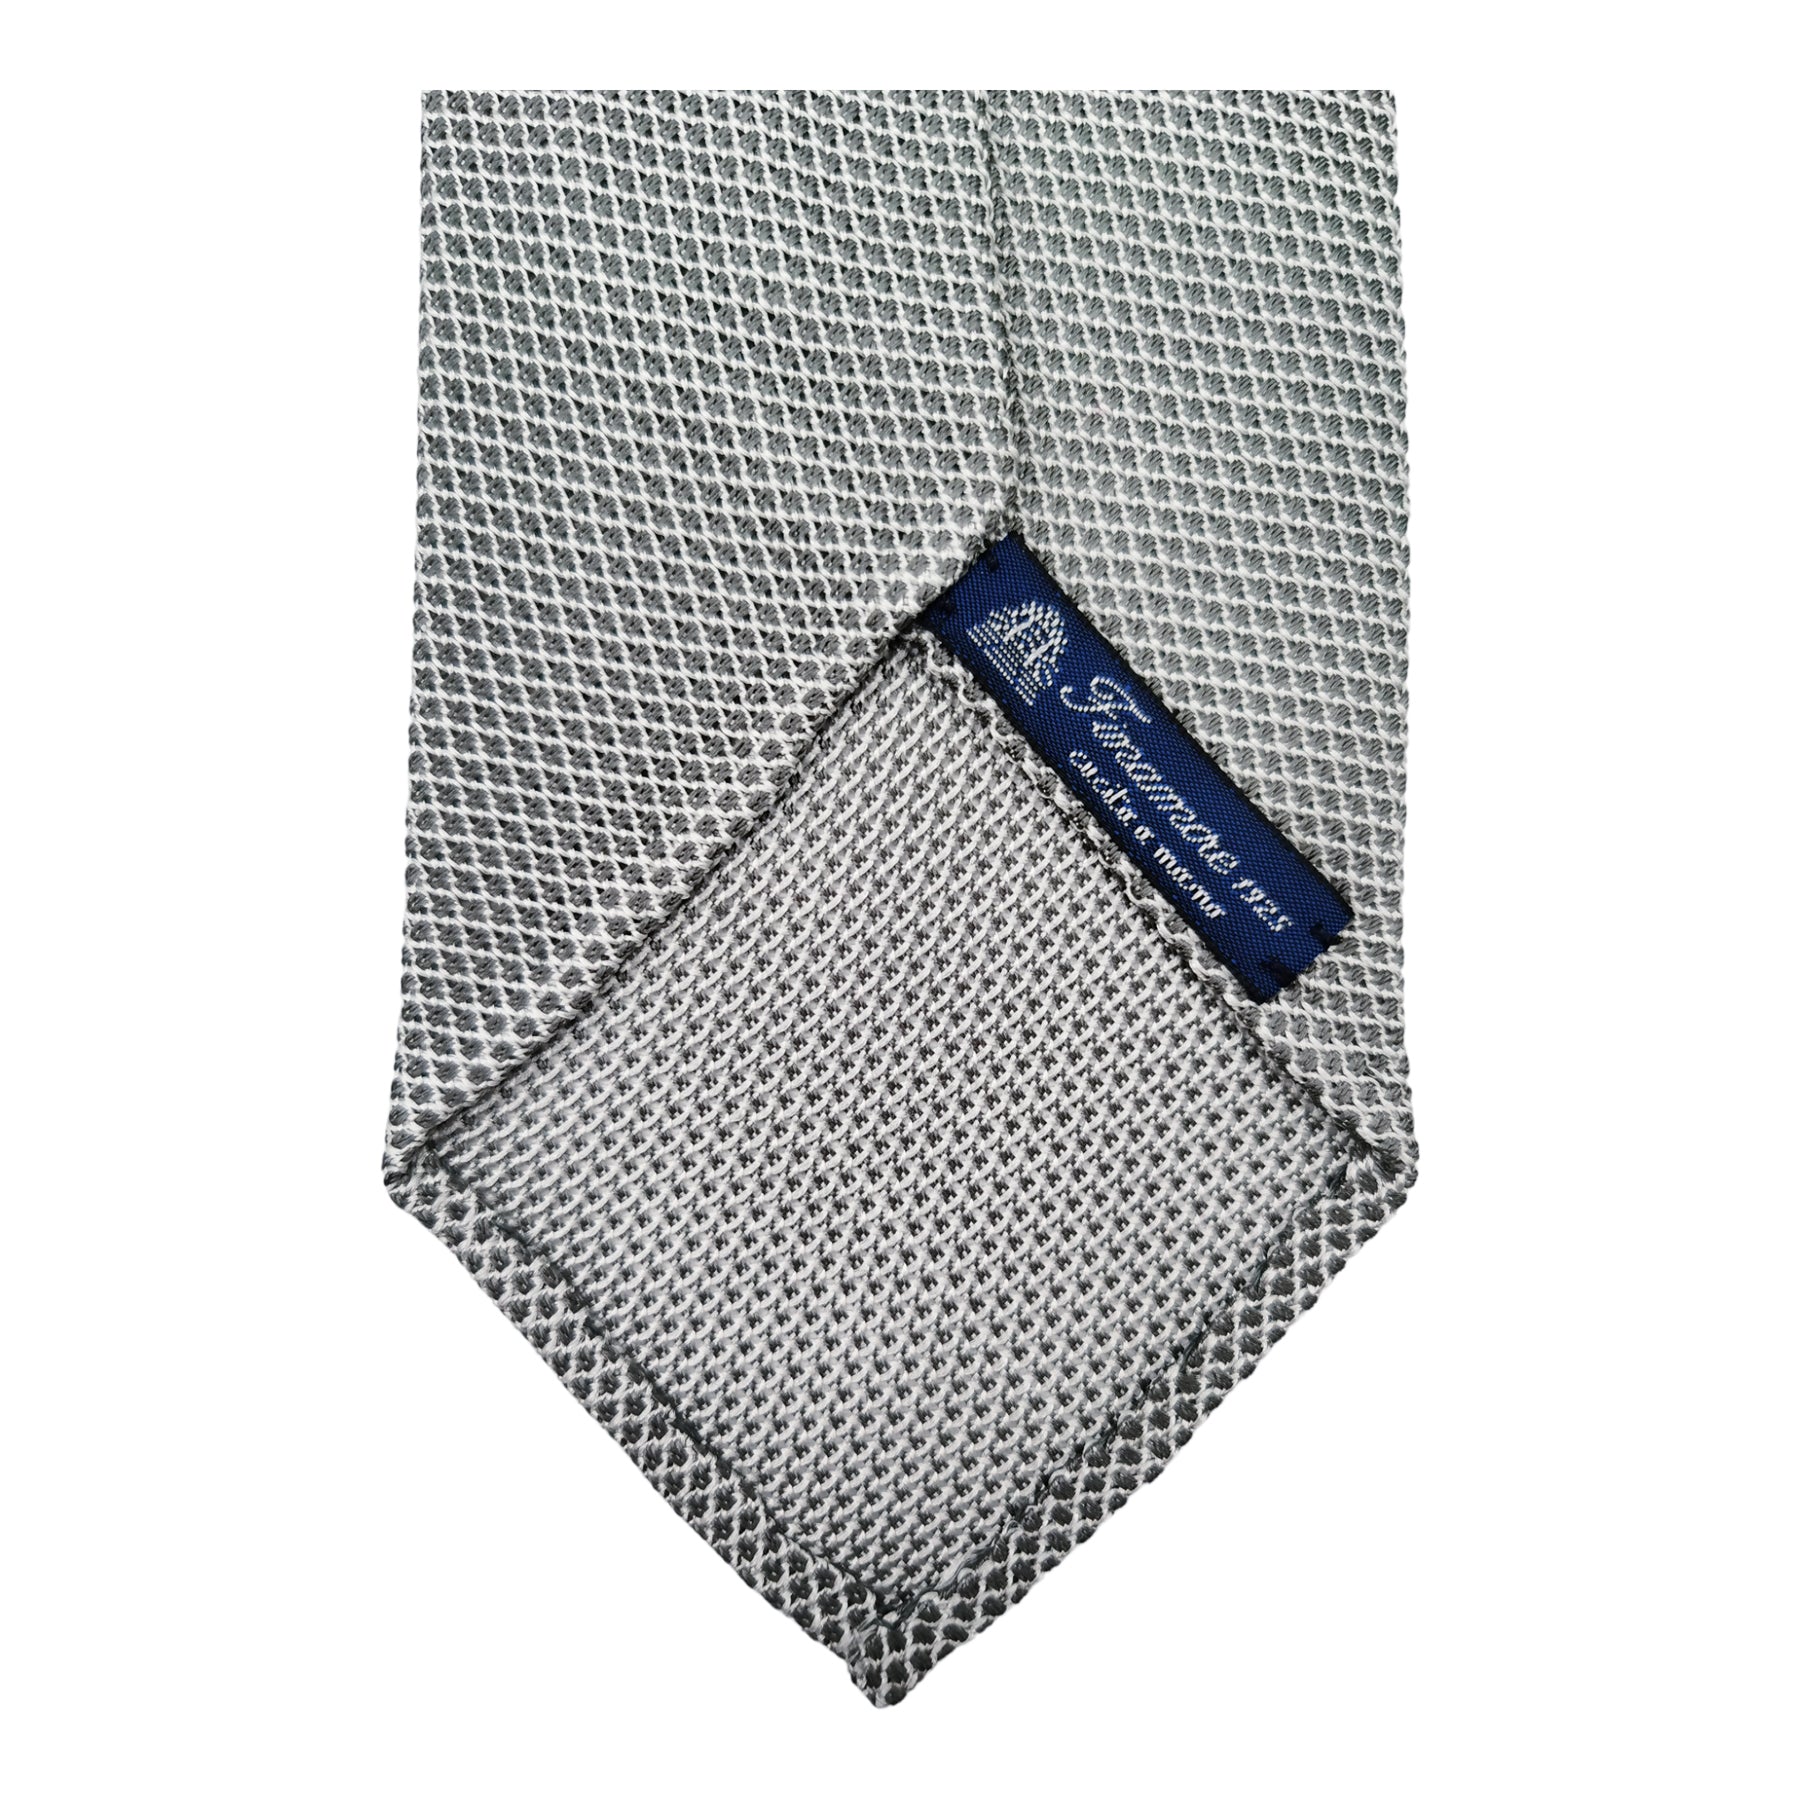 Cravatta Anversa in garza di seta, fondo unico con micro dettagli in grigio